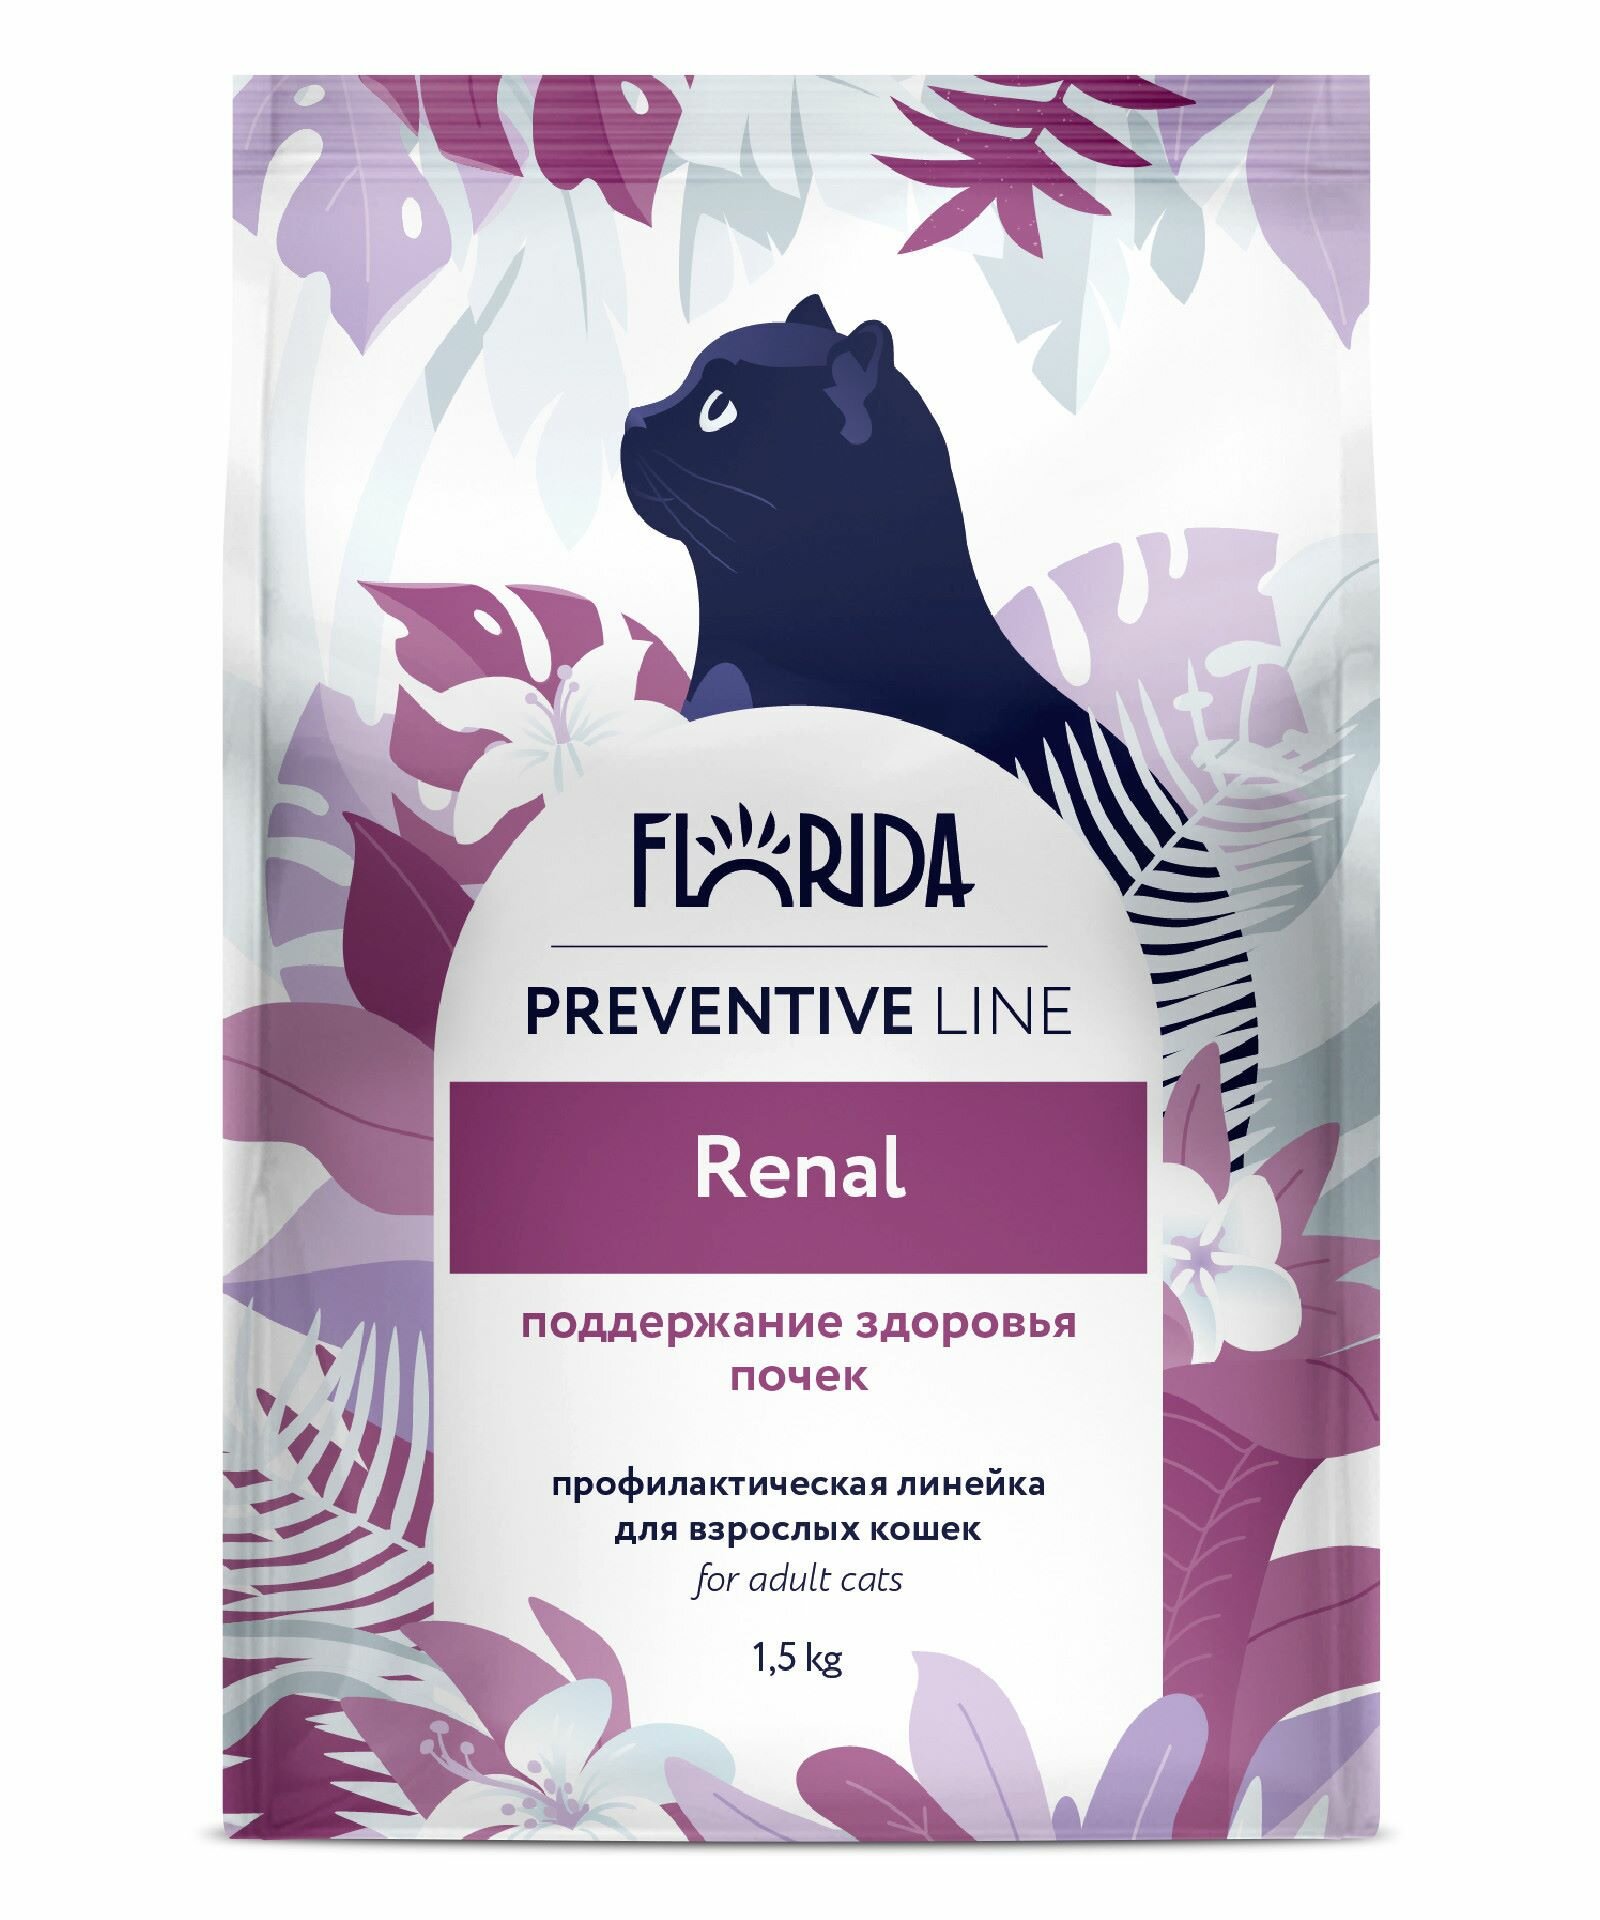 FLORIDA Preventive Line Renal Сухой корм для кошек "Поддержание здоровья почек", 1,5кг